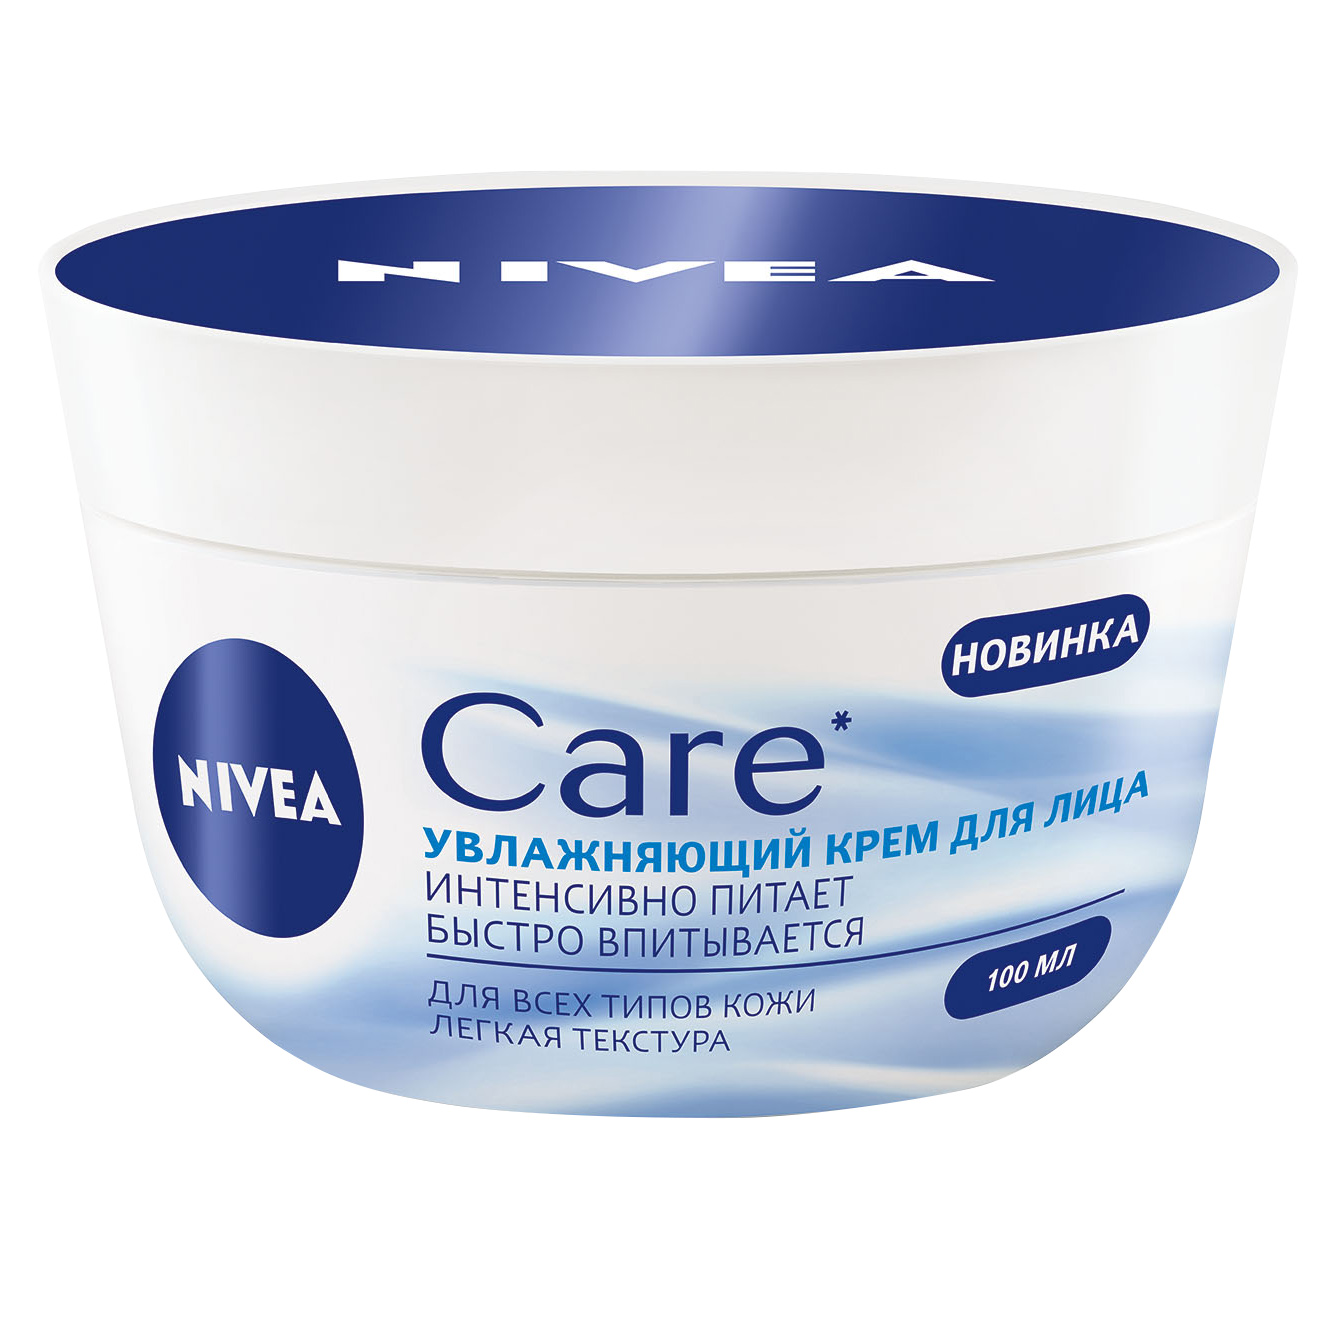 Питательный крем-легкость Nivea Care для всех типов кожи 100 мл крем баттер для лица для сухой и очень сухой кожи 50г